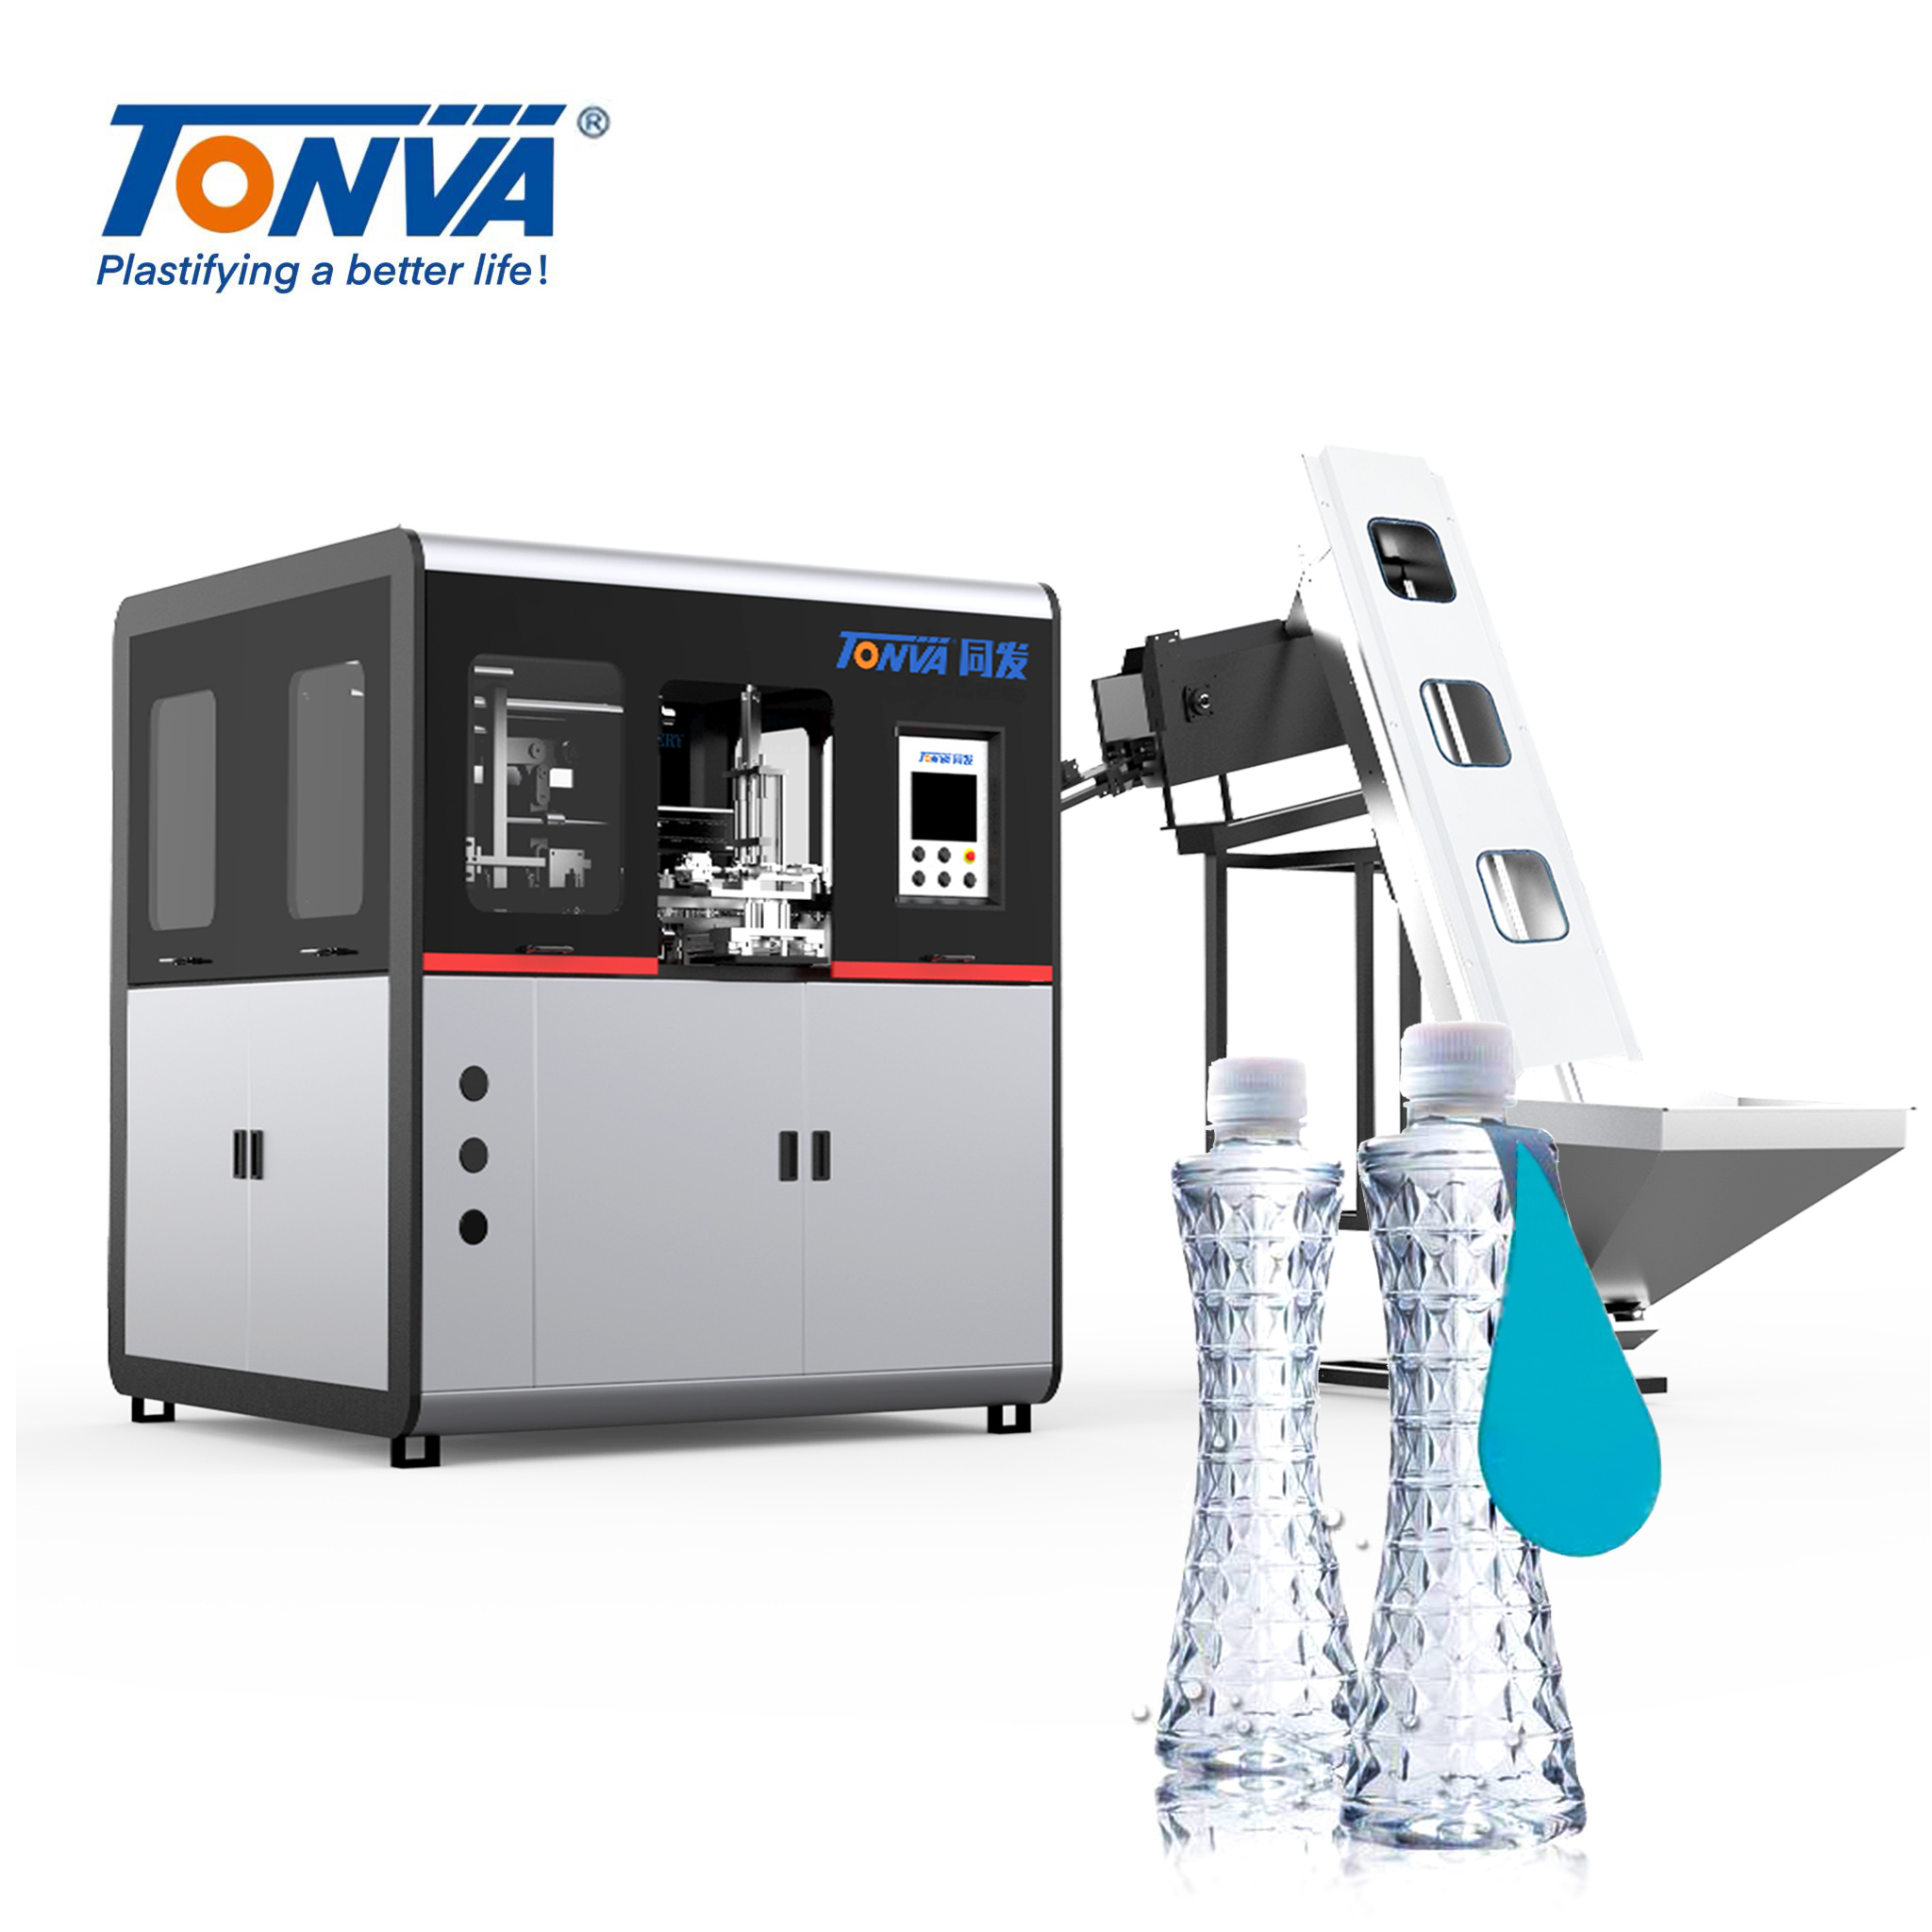 آلة نفخ زجاجات مياه الشرب ذات الشكل الخاص من TONVA